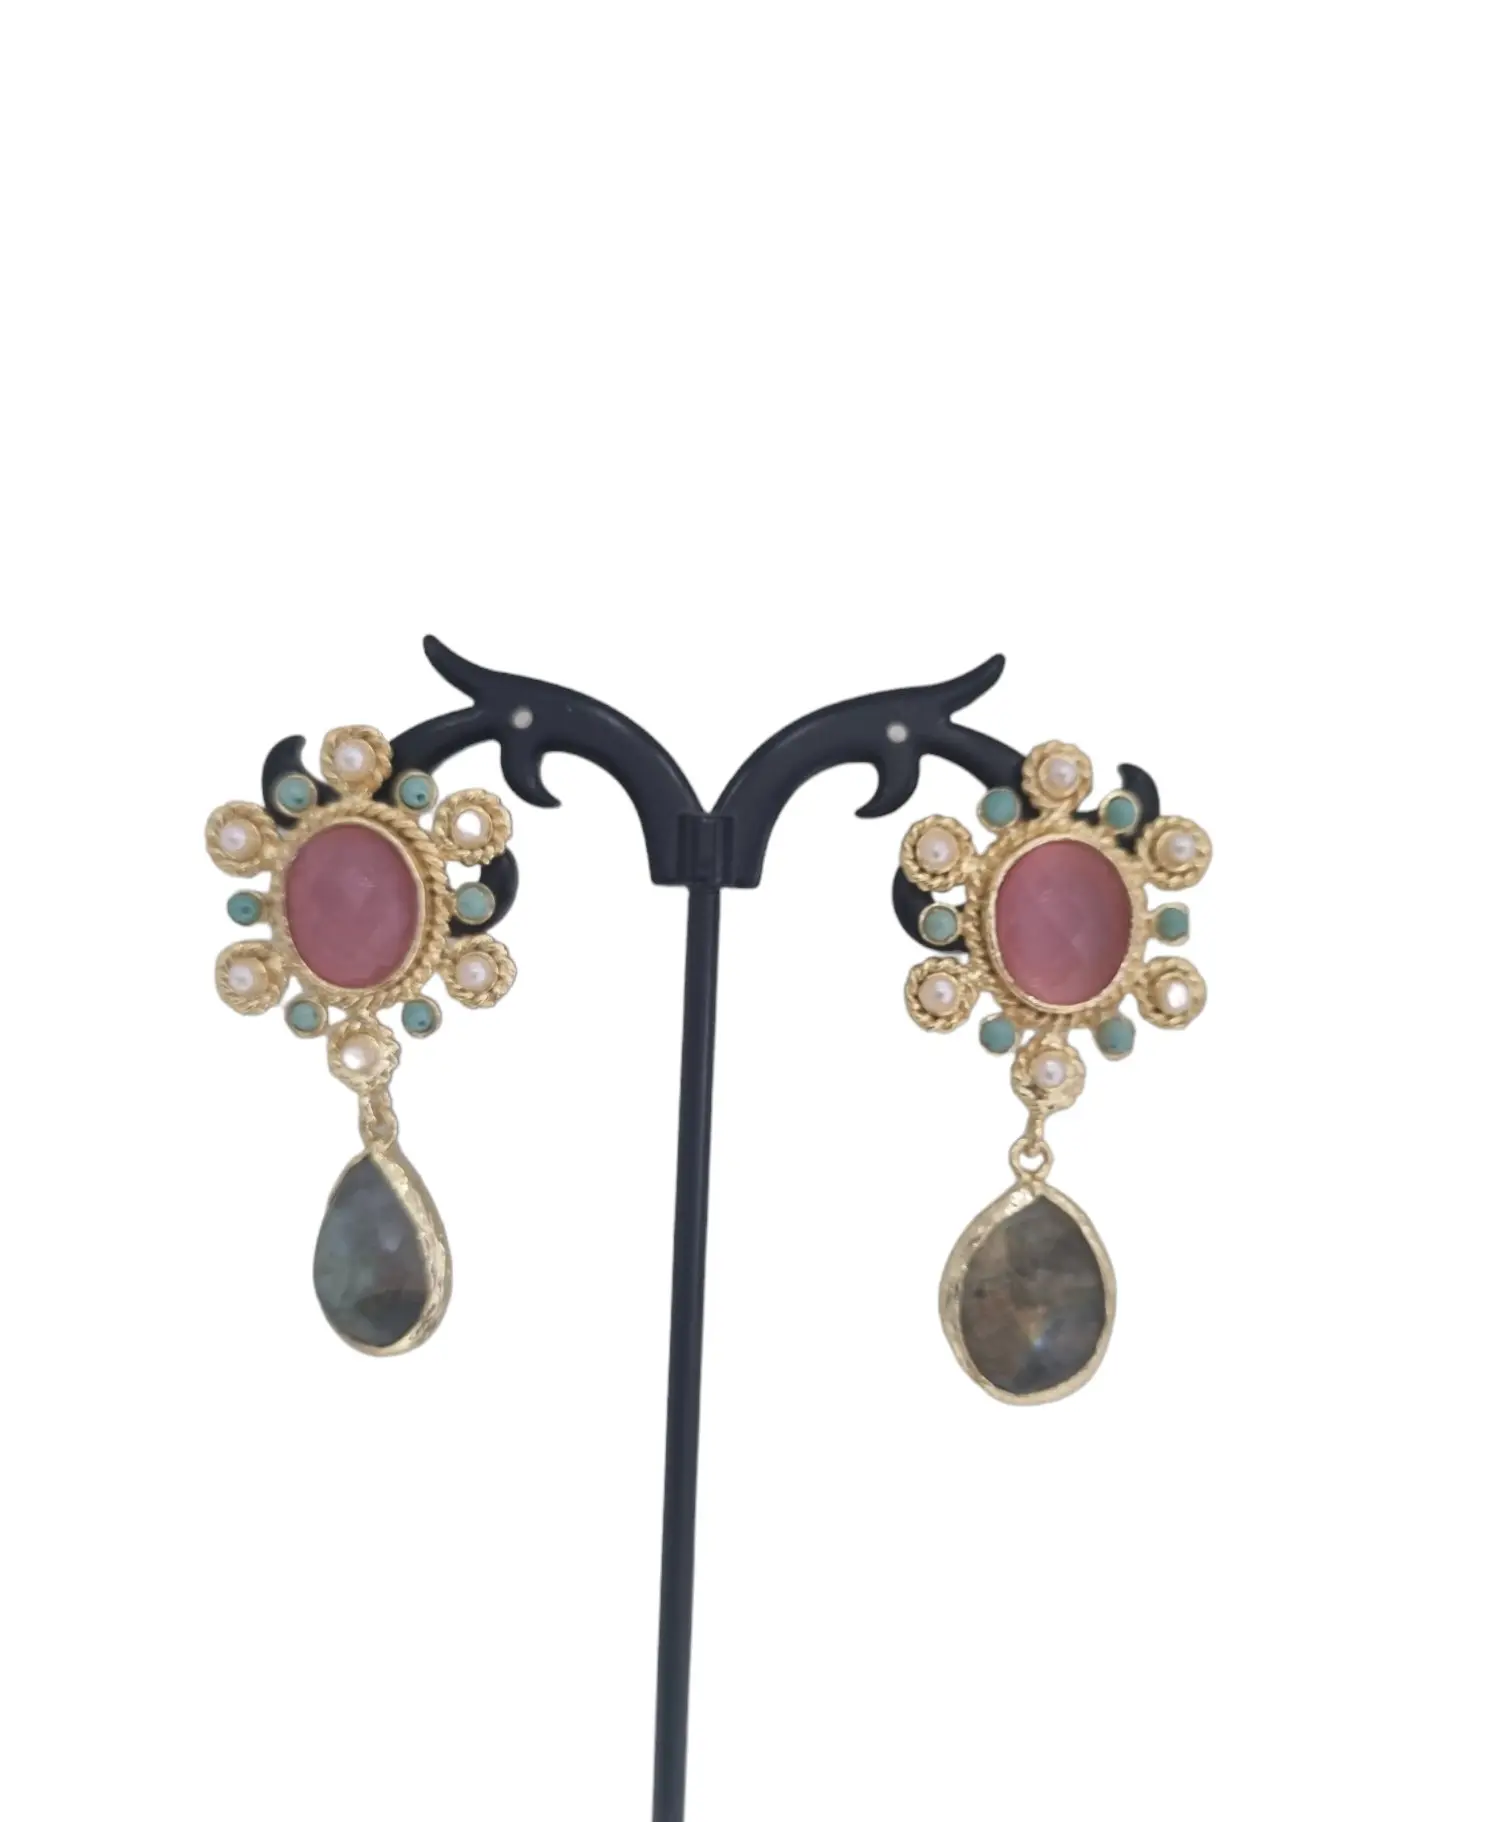 Boucles d'oreilles en agate, perles de Majorque, turquoise et labradorite serties sur laiton Longueur 4,5cm Poids 7g.